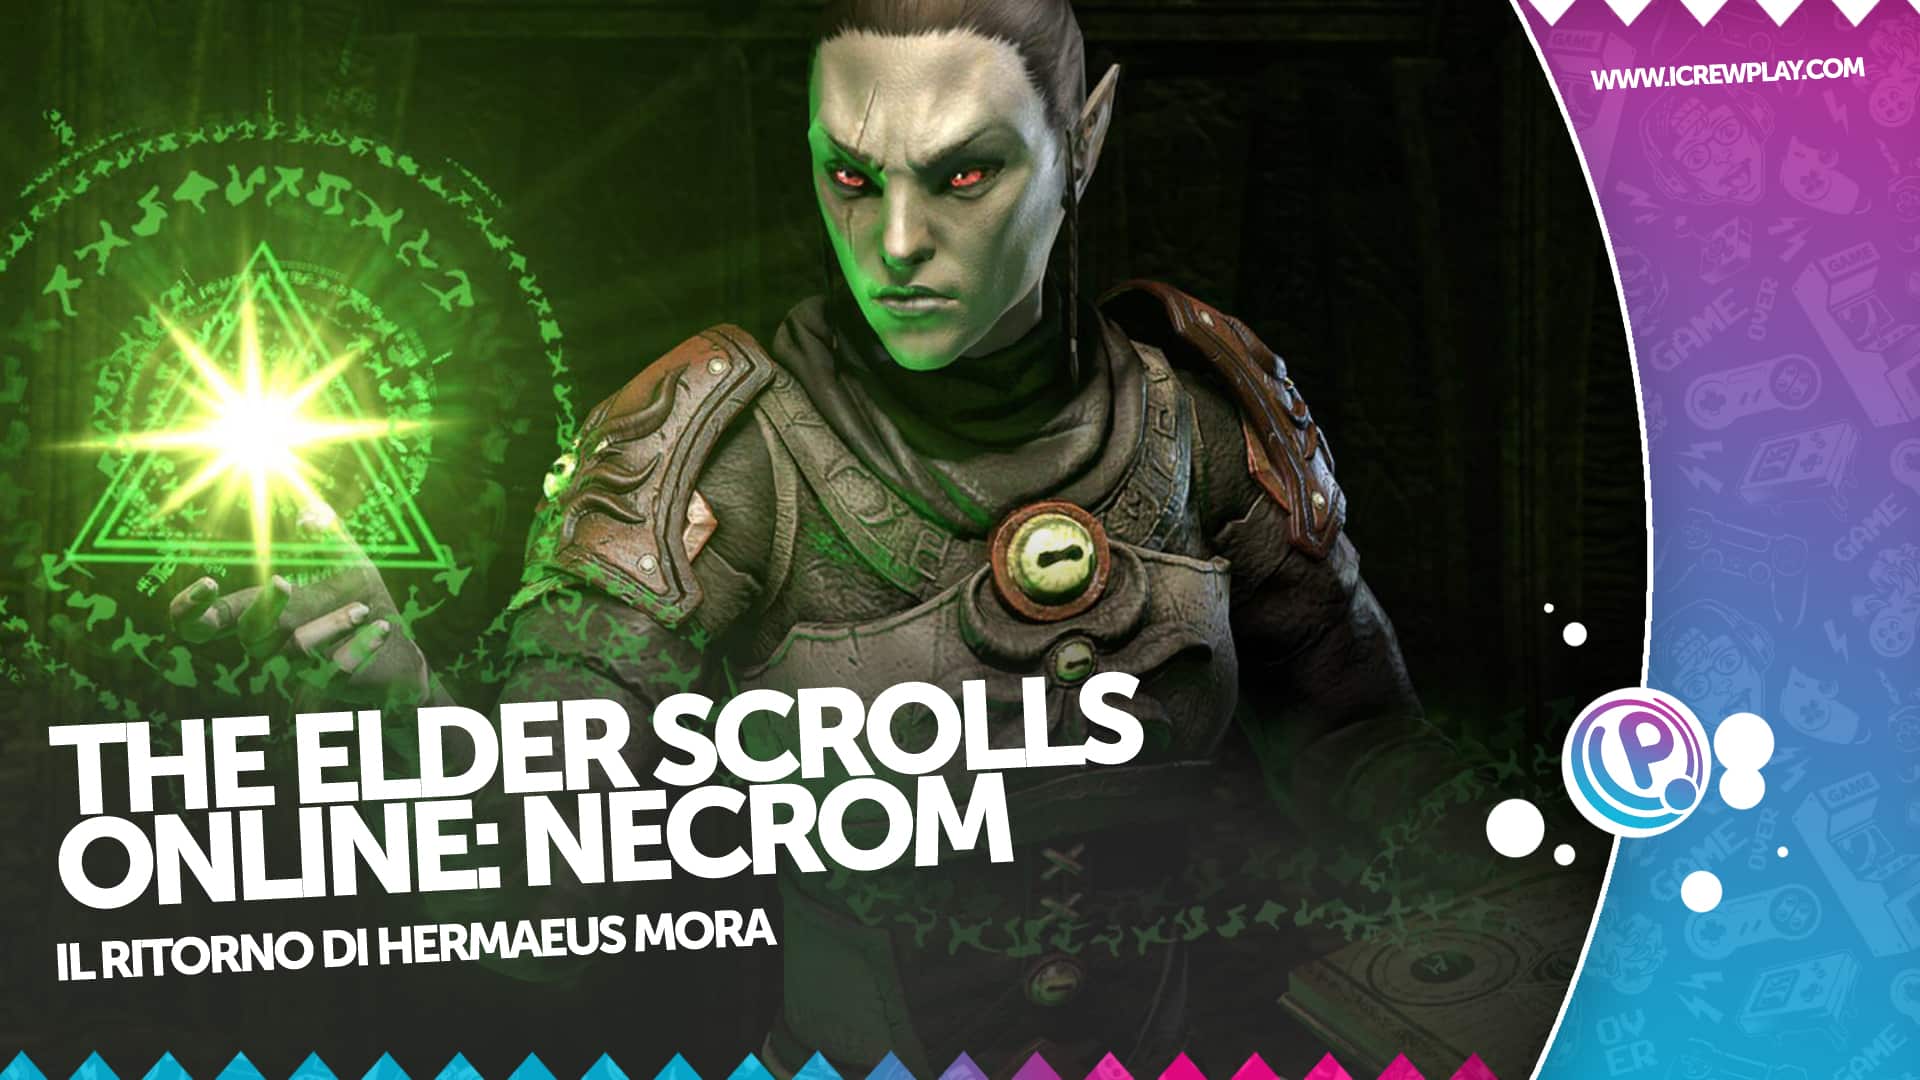 The Elder Scrolls Online Necrom: il ritorno di Hermaeus Mora